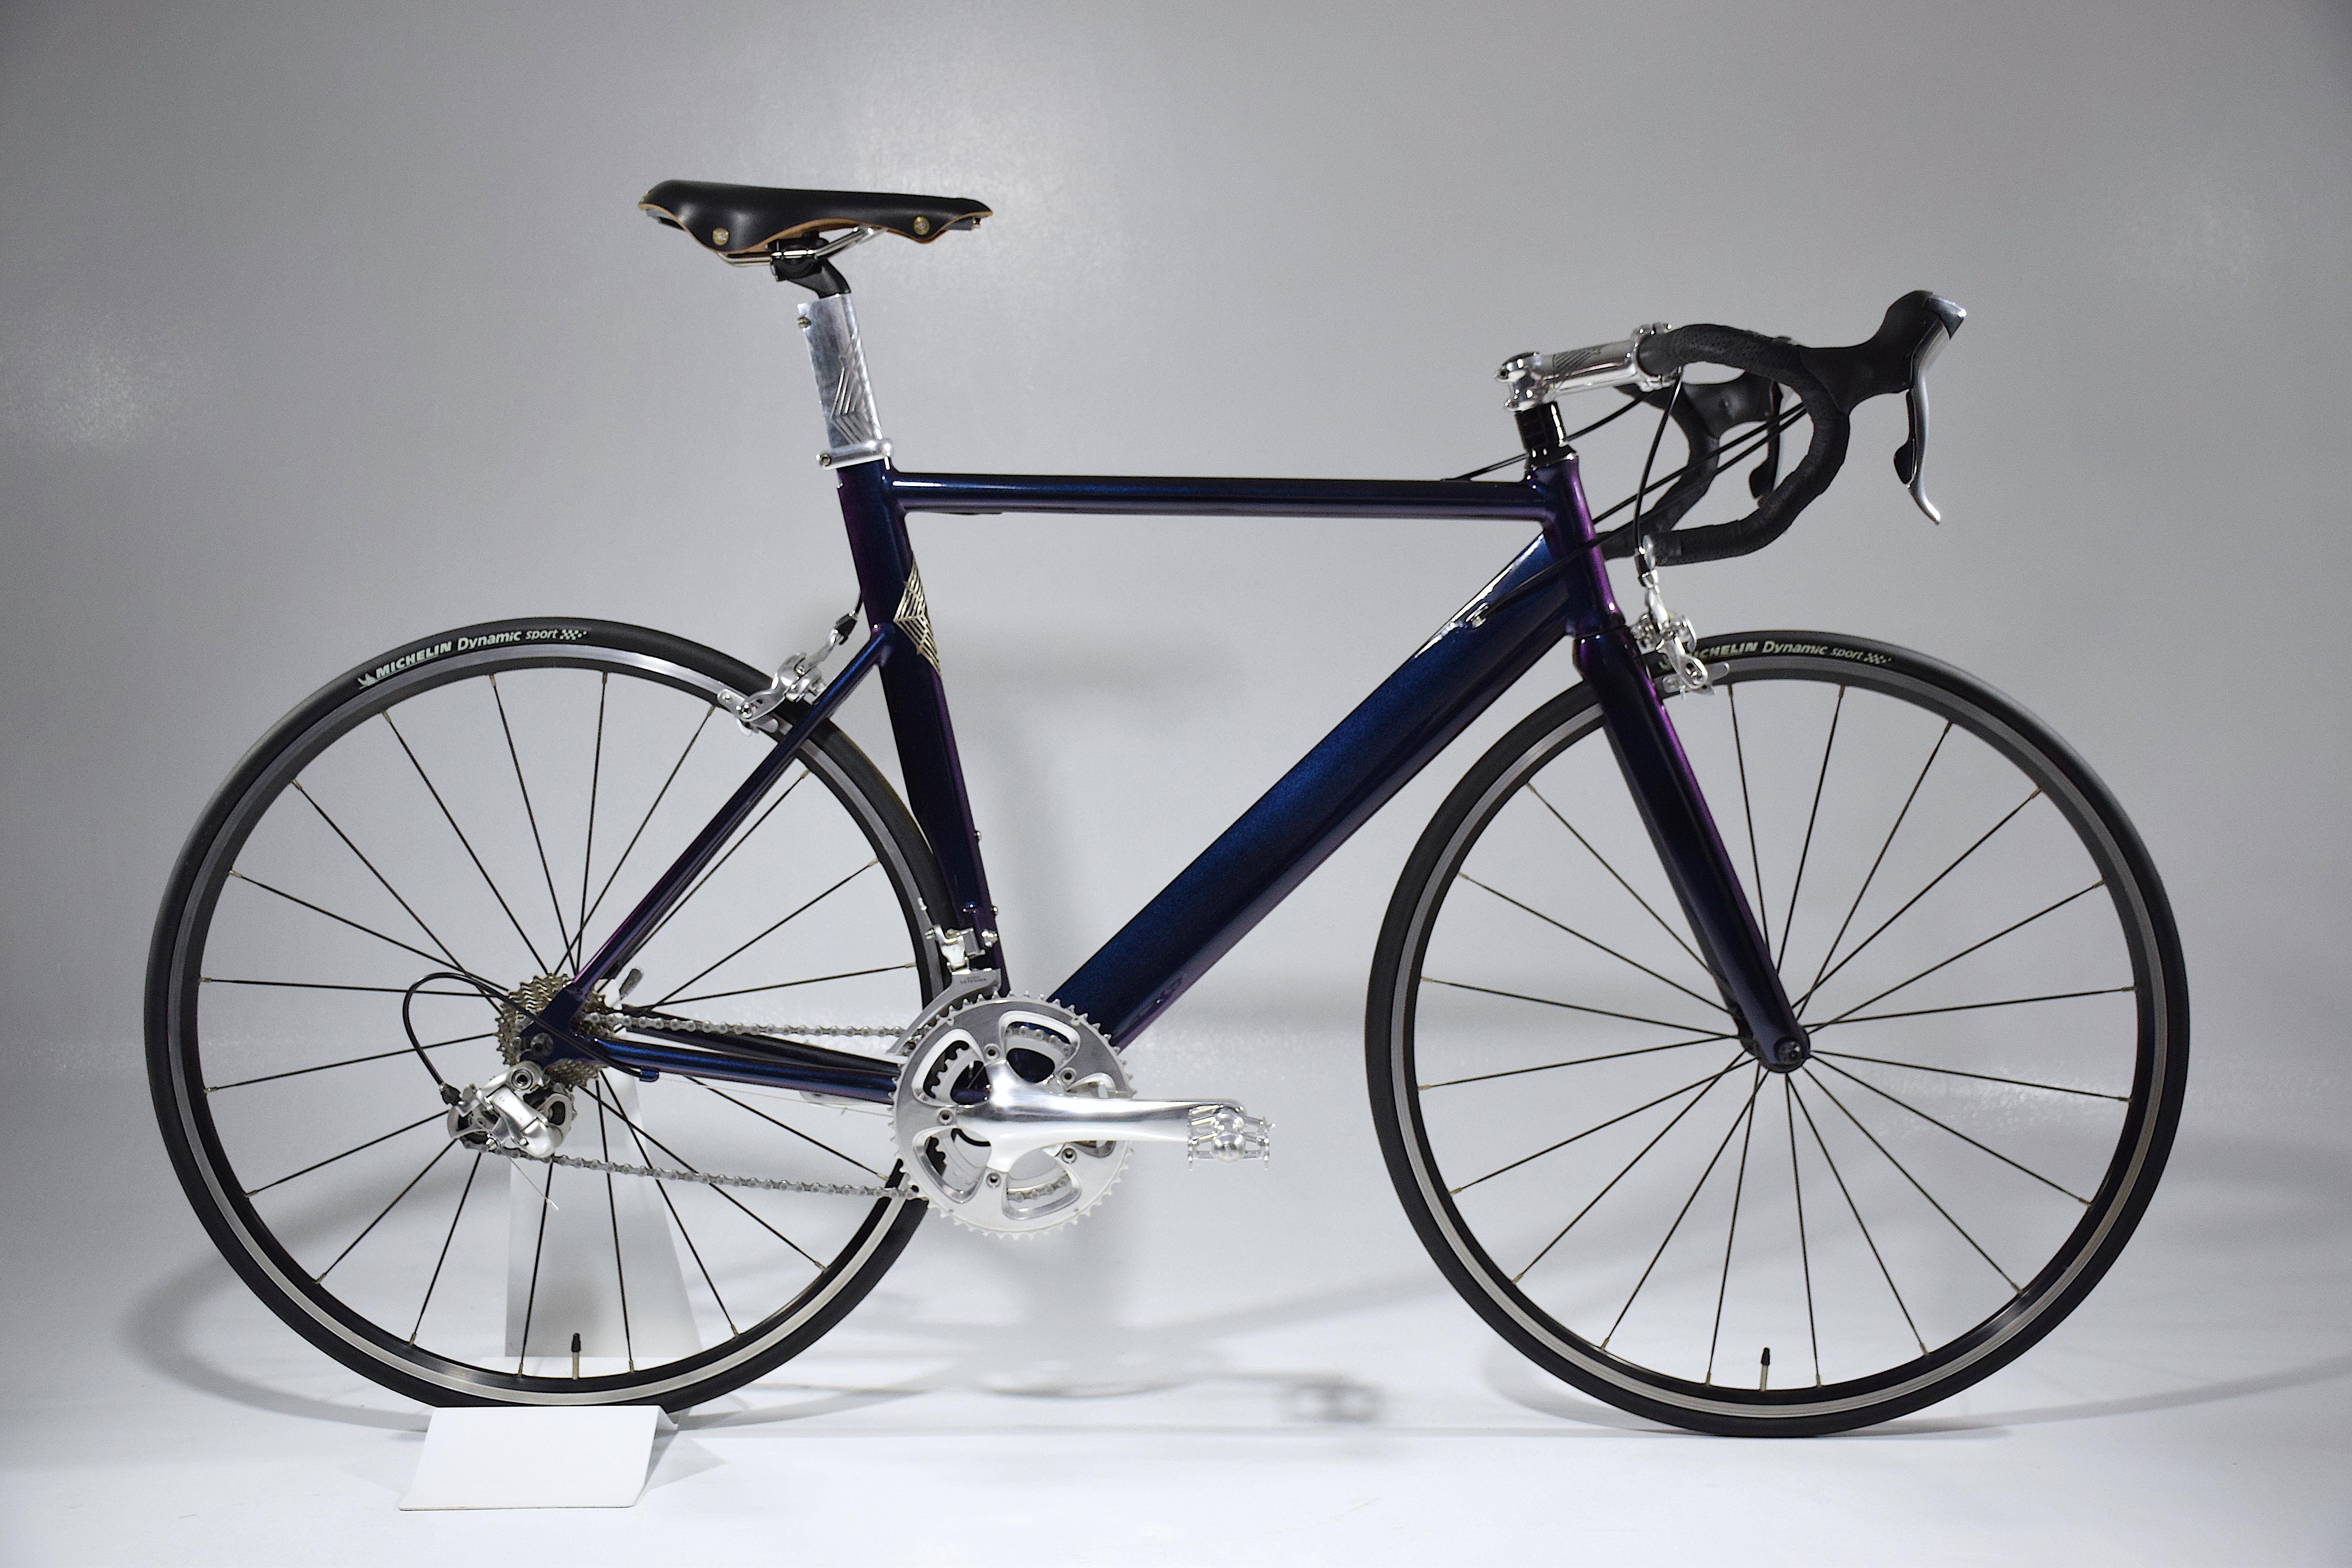 Le Venodi 043 est un vélo de route sur mesure construit à partir d'un cadre Cervelo vintage en aluminium léger et recyclé avec le savoir-faire artisanal de notre studio, de nouveaux composants et des matériaux de qualité. 
Tous les détails